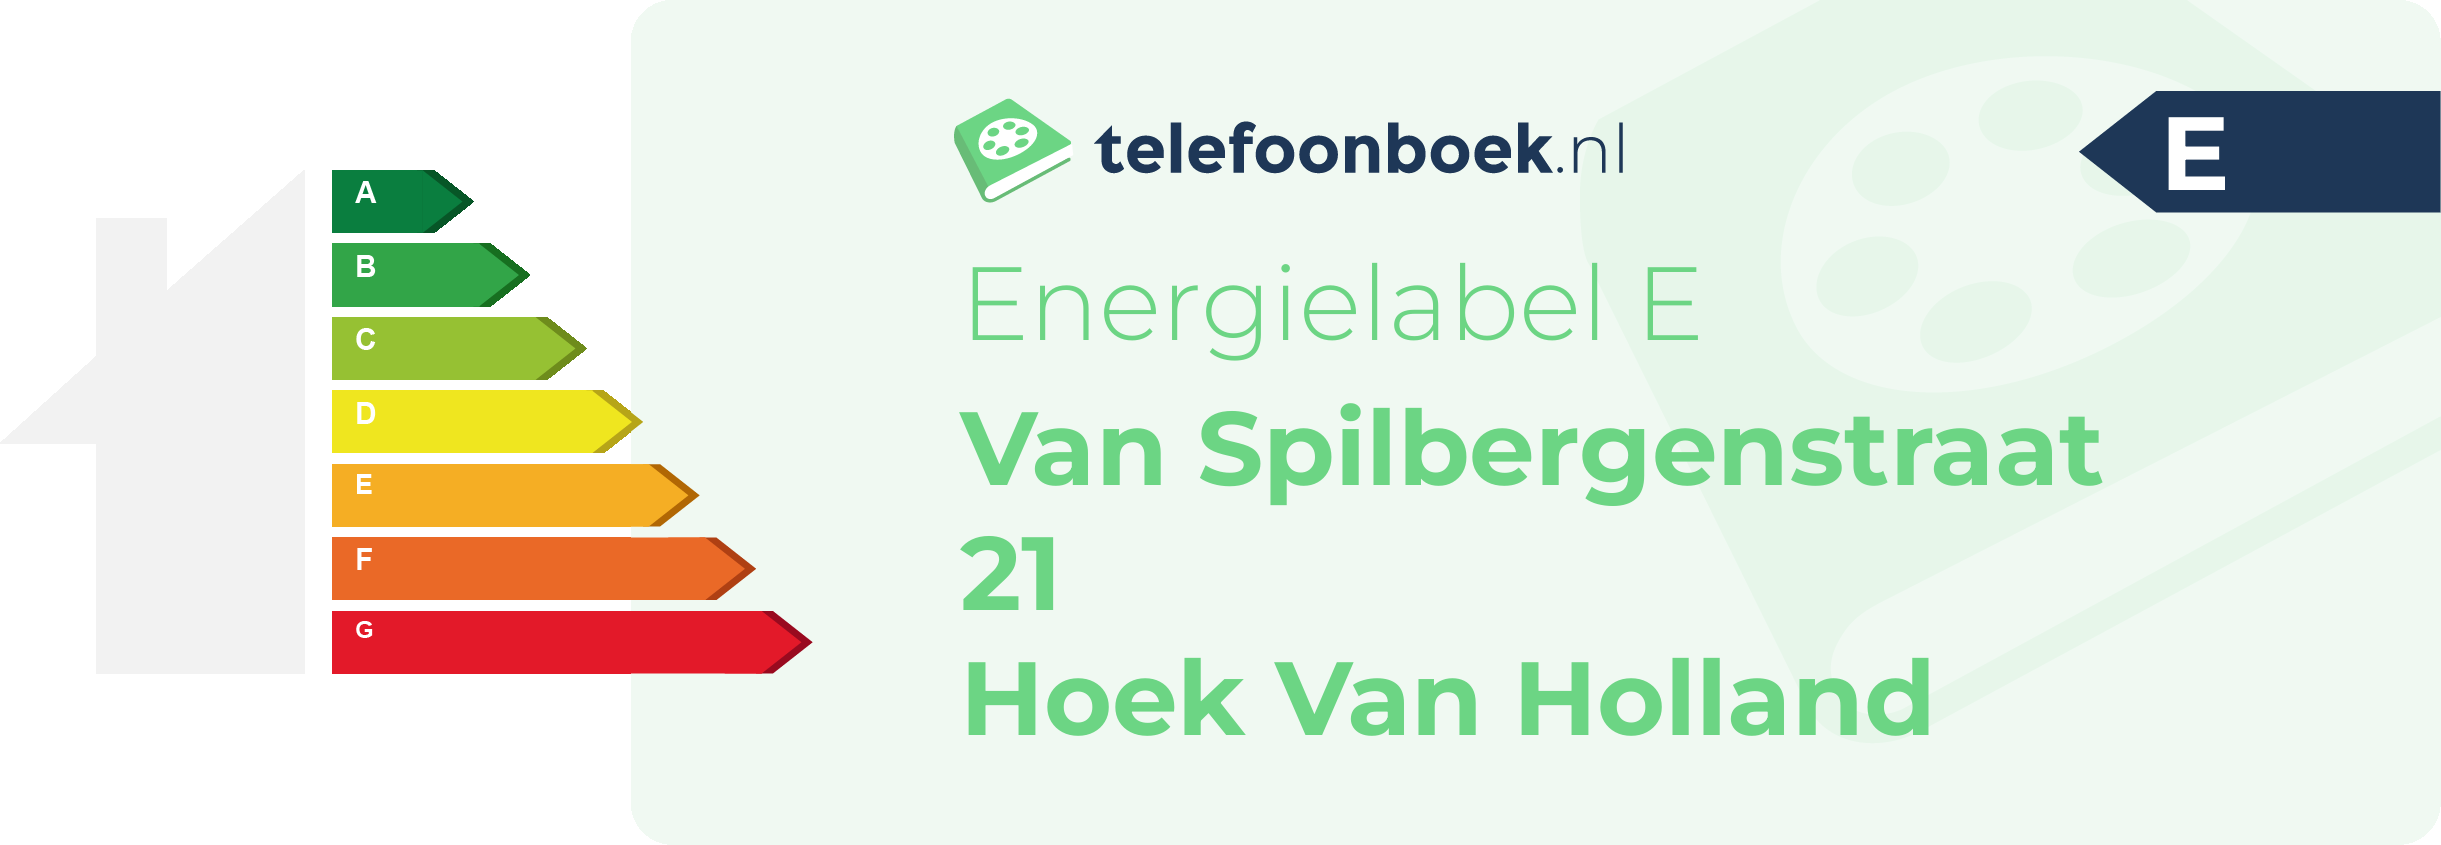 Energielabel Van Spilbergenstraat 21 Hoek Van Holland